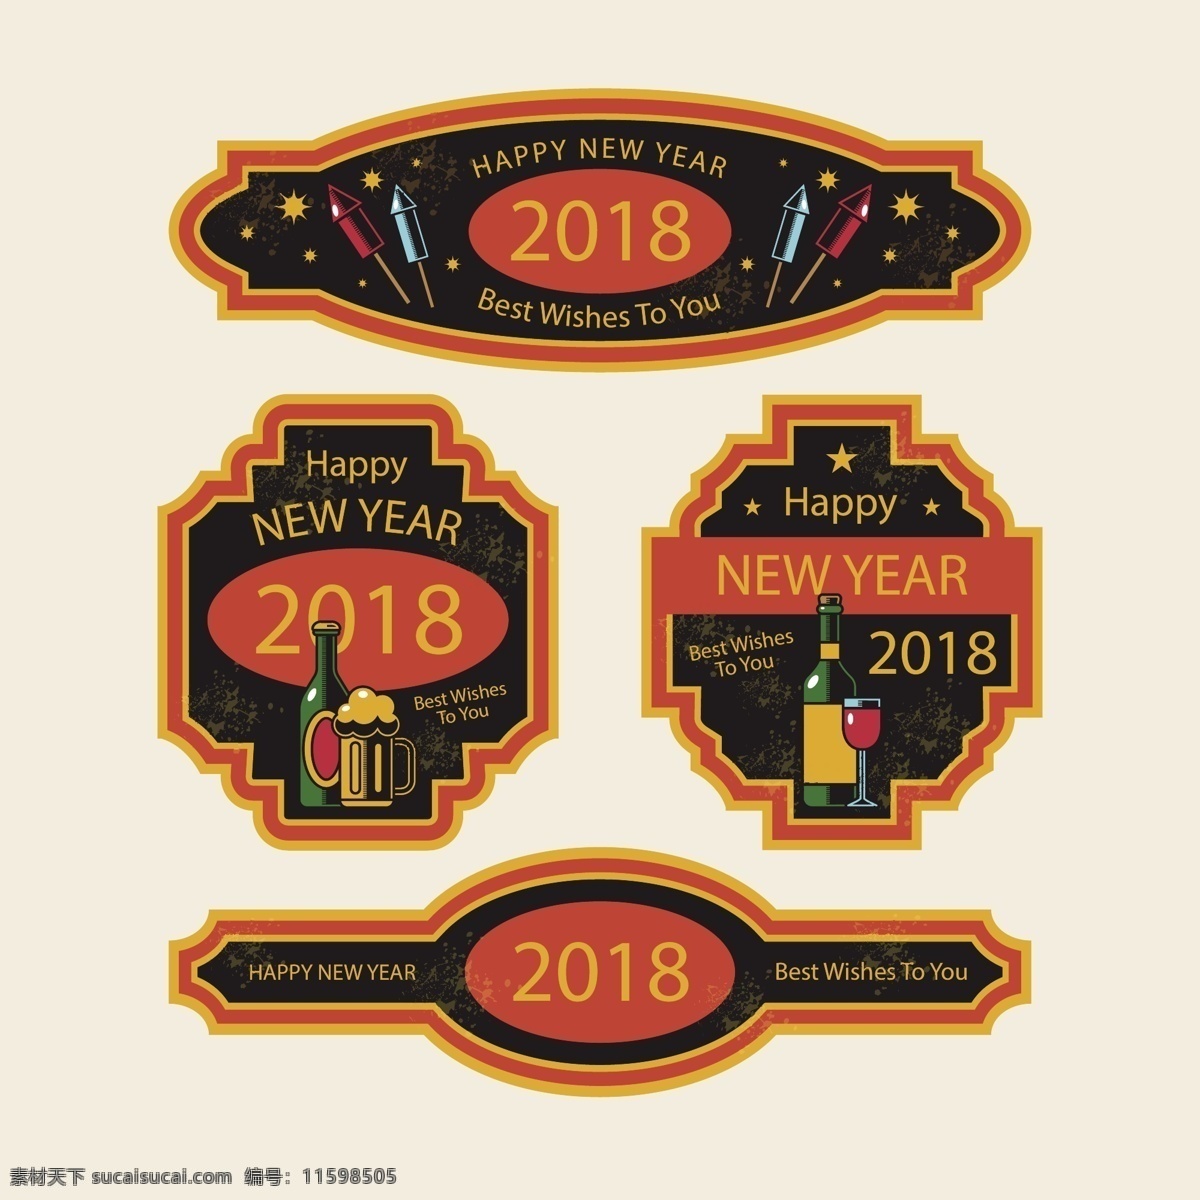 古董 新年 2018 徽章 收集 2018徽章 橙色 新年徽章 棕色